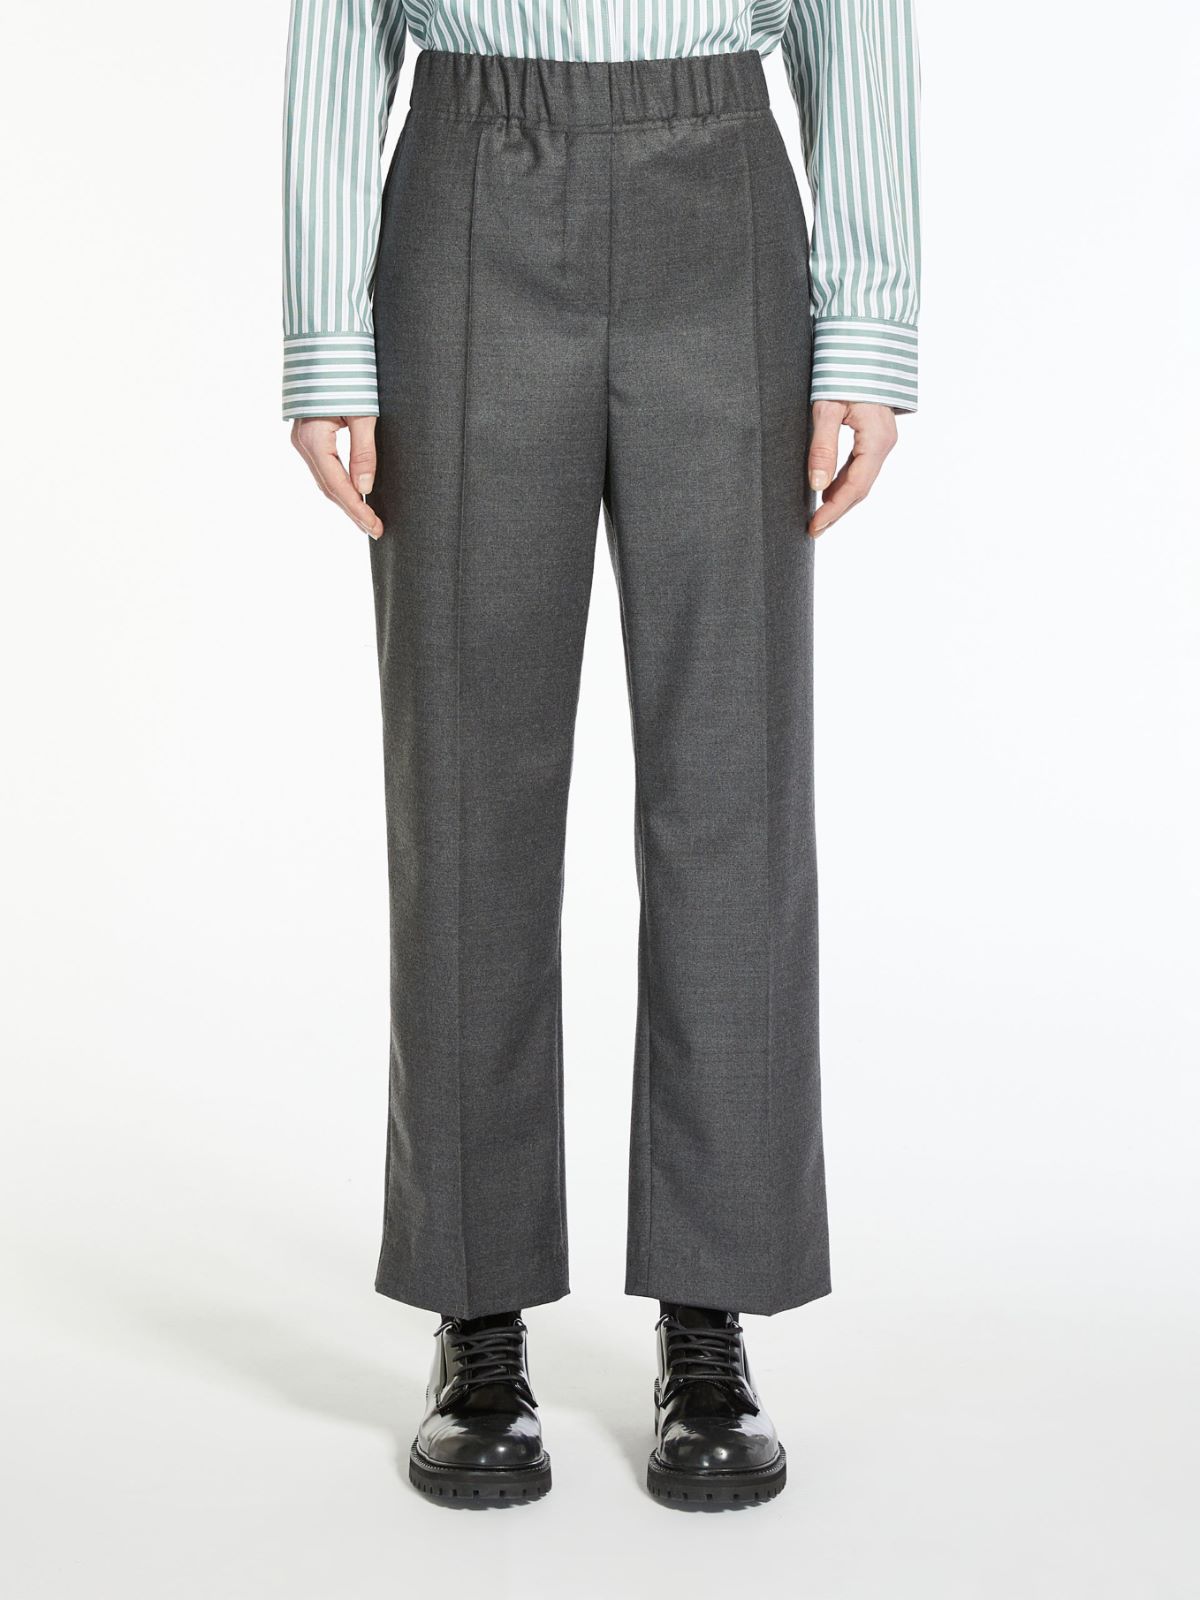 Wool flannel trousers - DARK GREY - Weekend Max Mara - 2